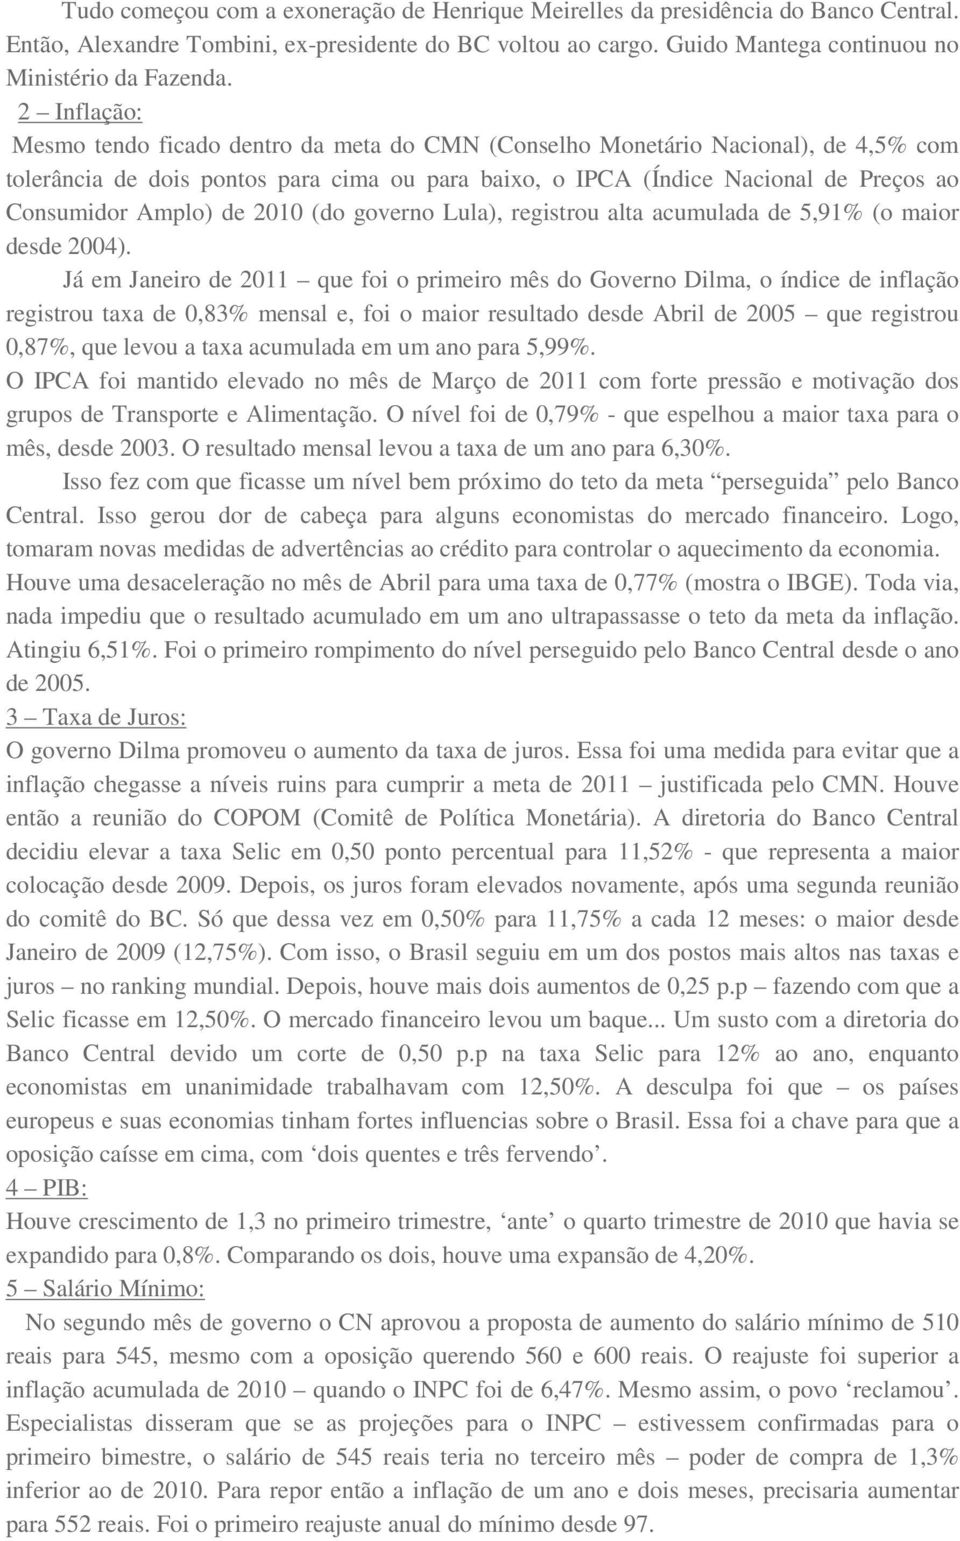 Amplo) de 2010 (do governo Lula), registrou alta acumulada de 5,91% (o maior desde 2004).